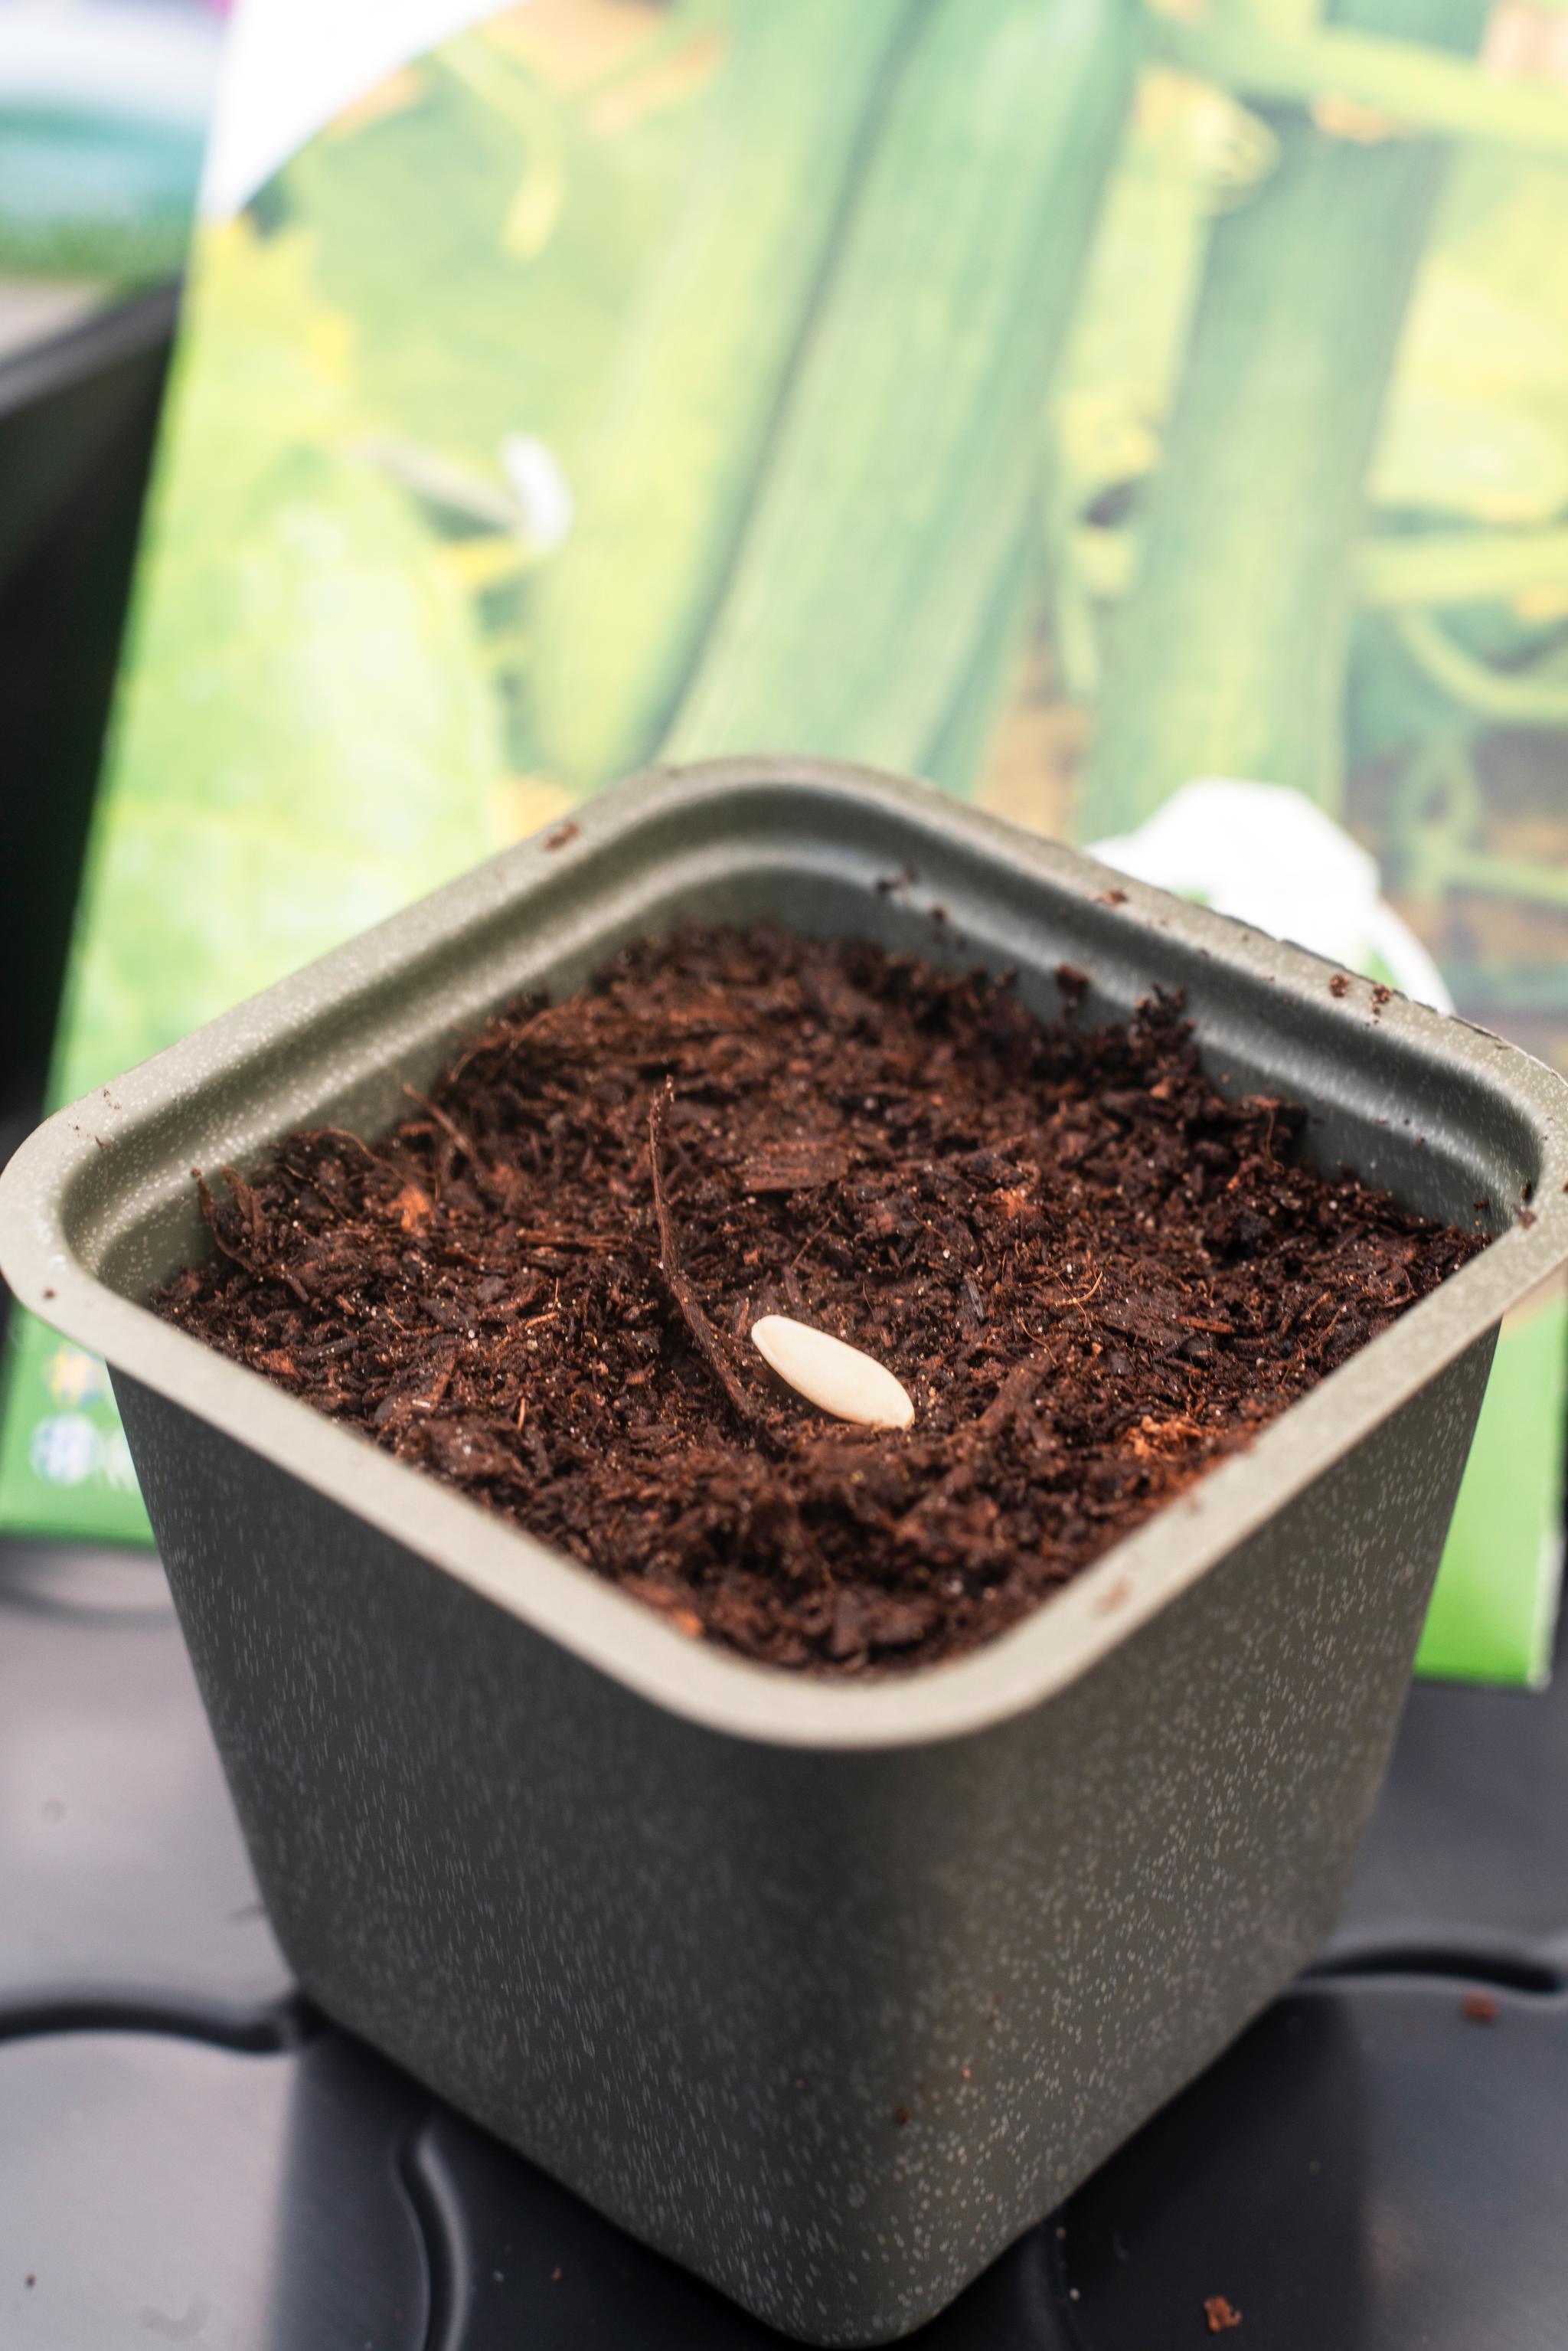 TRINN 1: Sår man i en liten potte, er det nok med ett frø av gangen. Når planten begynner å spire, flyttes den over i en større potte. Voksenpotten må ha hull i bunnen til drenering. Legg gjerne et lag med småstein nederst før du fyller på med jord.